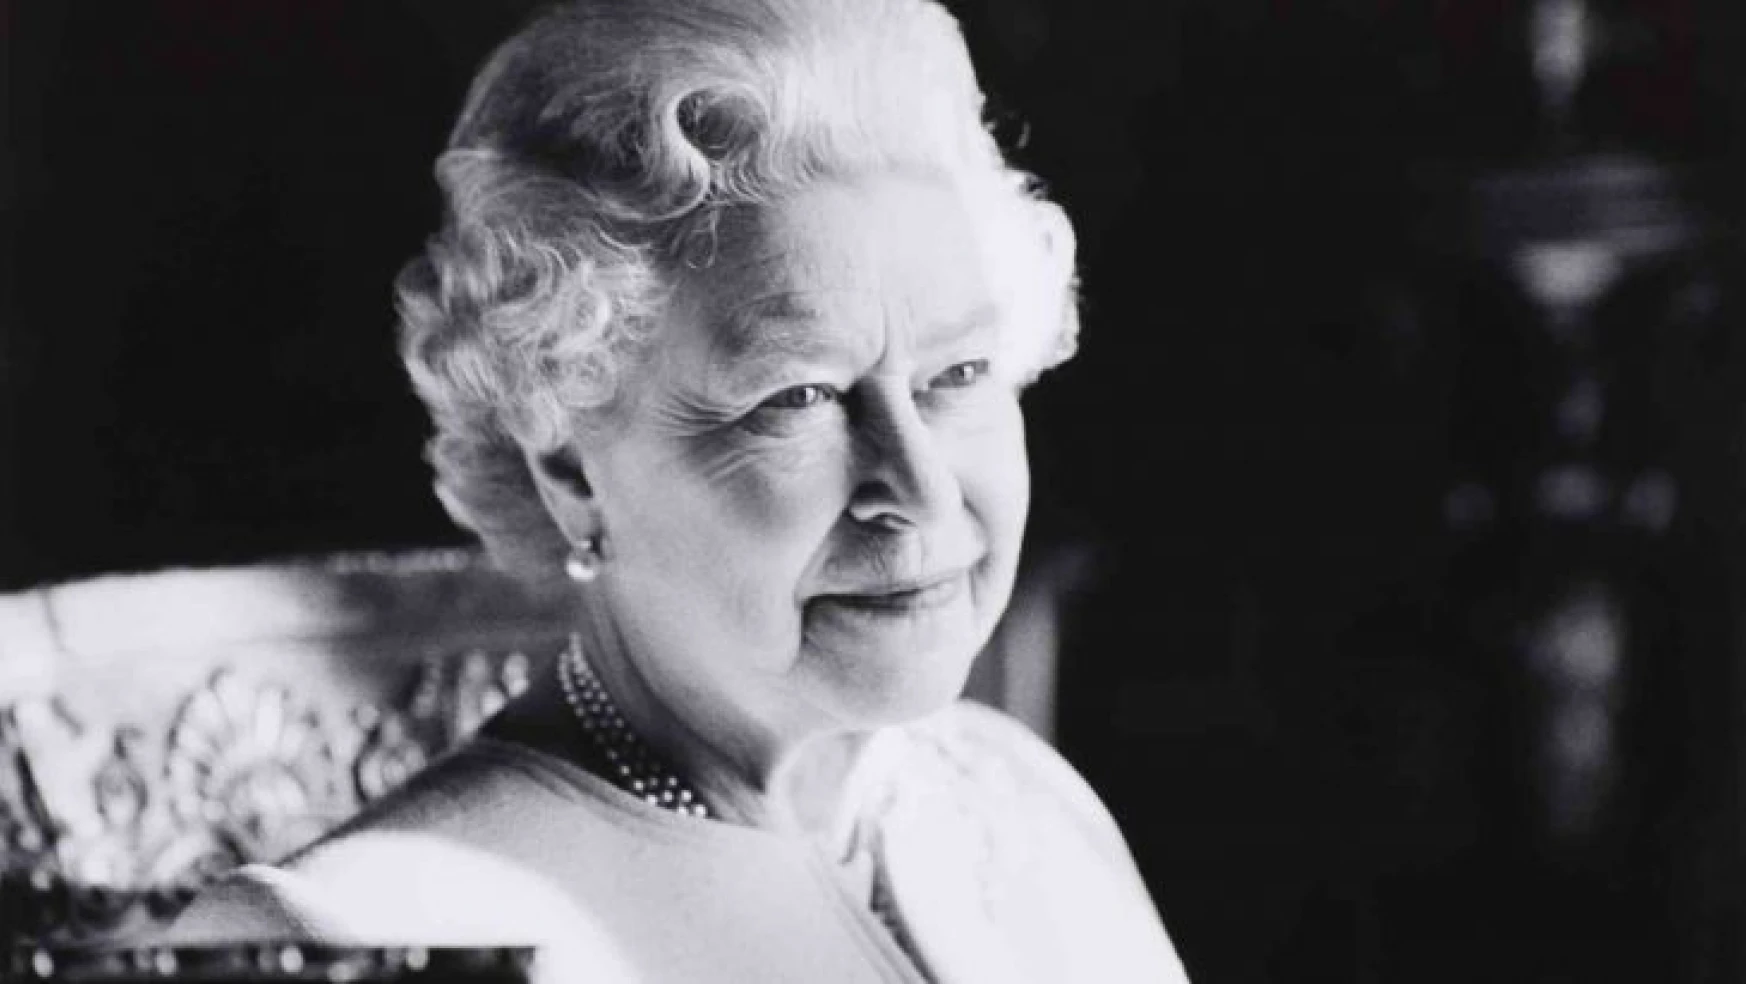 Kraliçe II. Elizabeth'in cenaze töreni 19 Eylül'de yapılacak